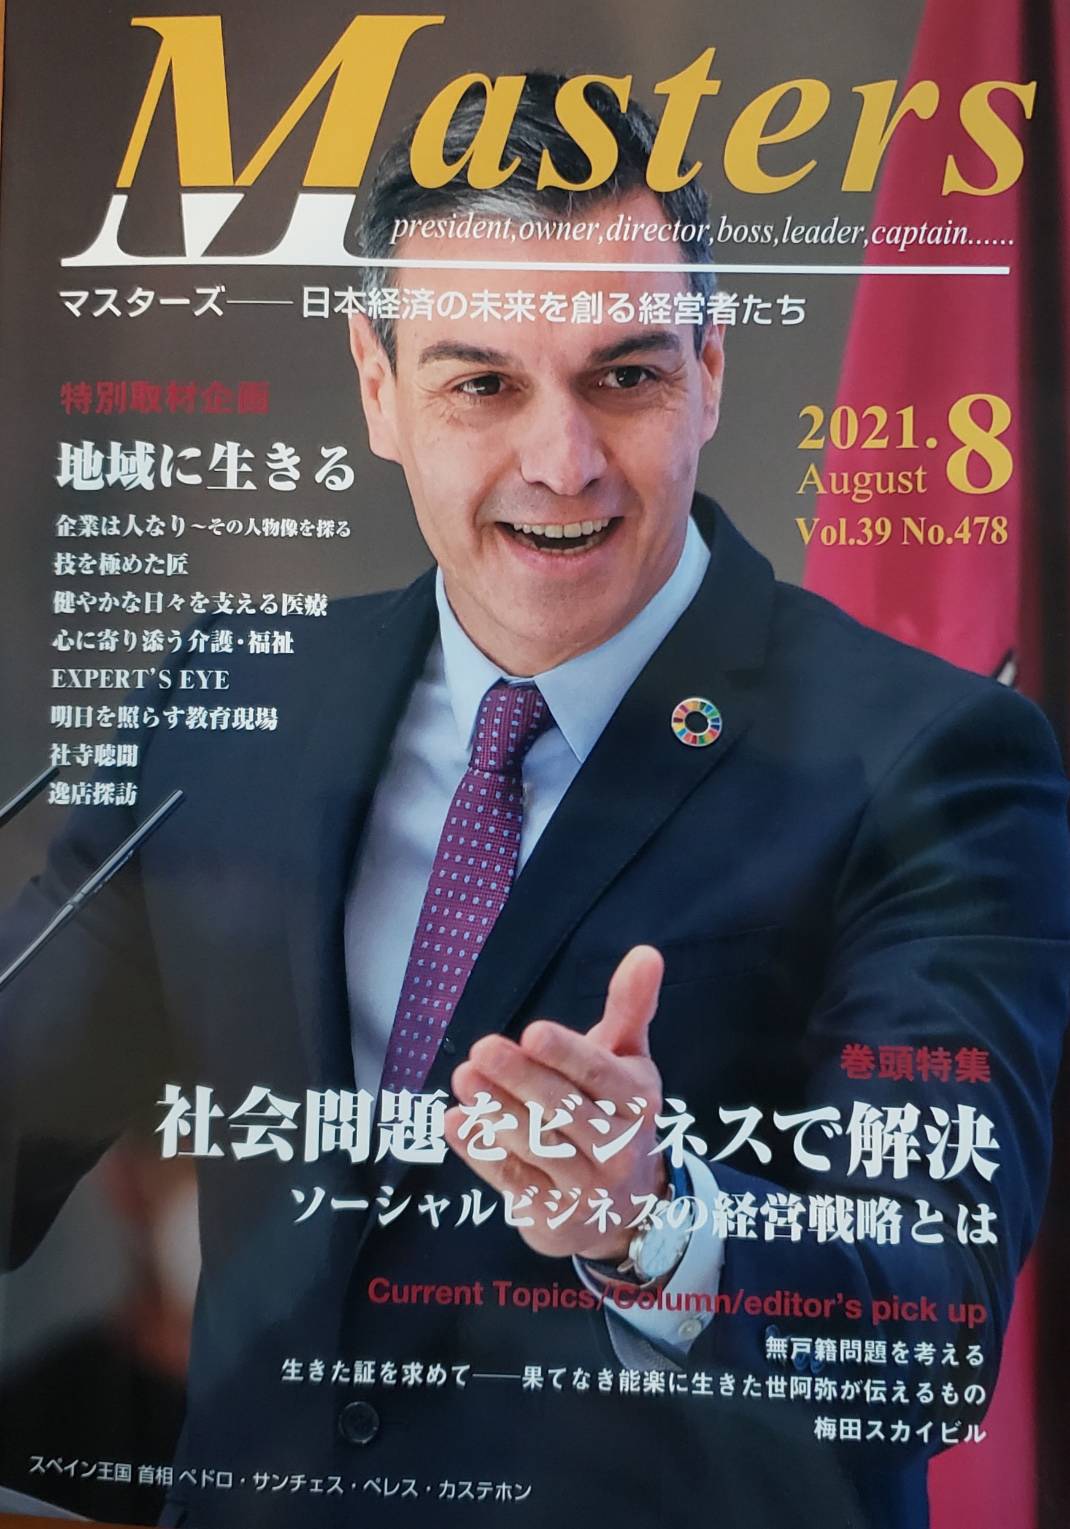 大沢樹生さんと対談した月刊マスターズ8月号が8/1に発刊となります。